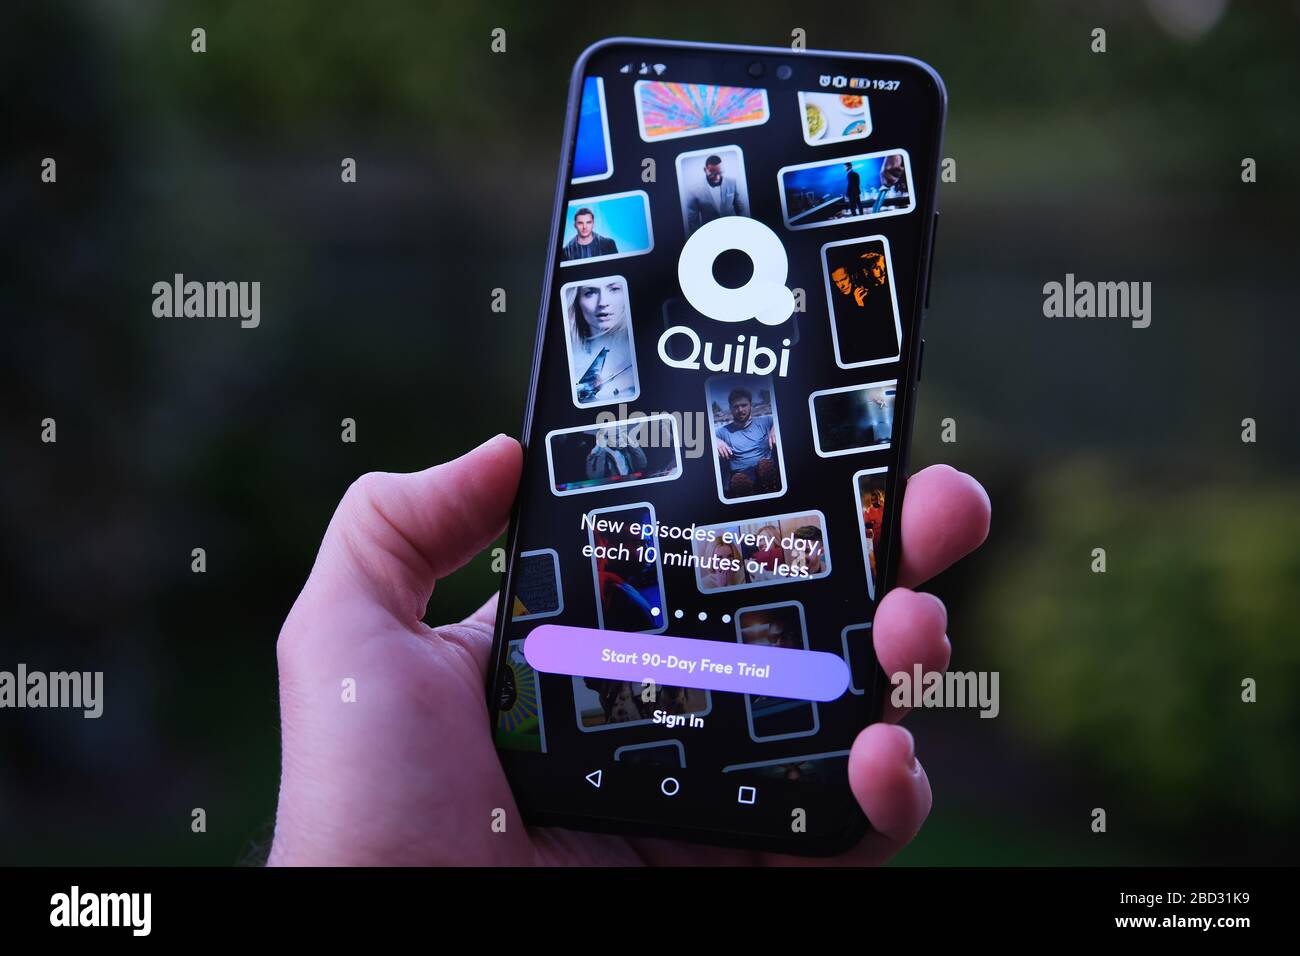 Stone / Royaume-Uni - 6 avril 2020: Quibi app connexion écran sur le smartphone tenir dans la main. Quibi est une nouvelle plate-forme de diffusion vidéo courte, comper Banque D'Images